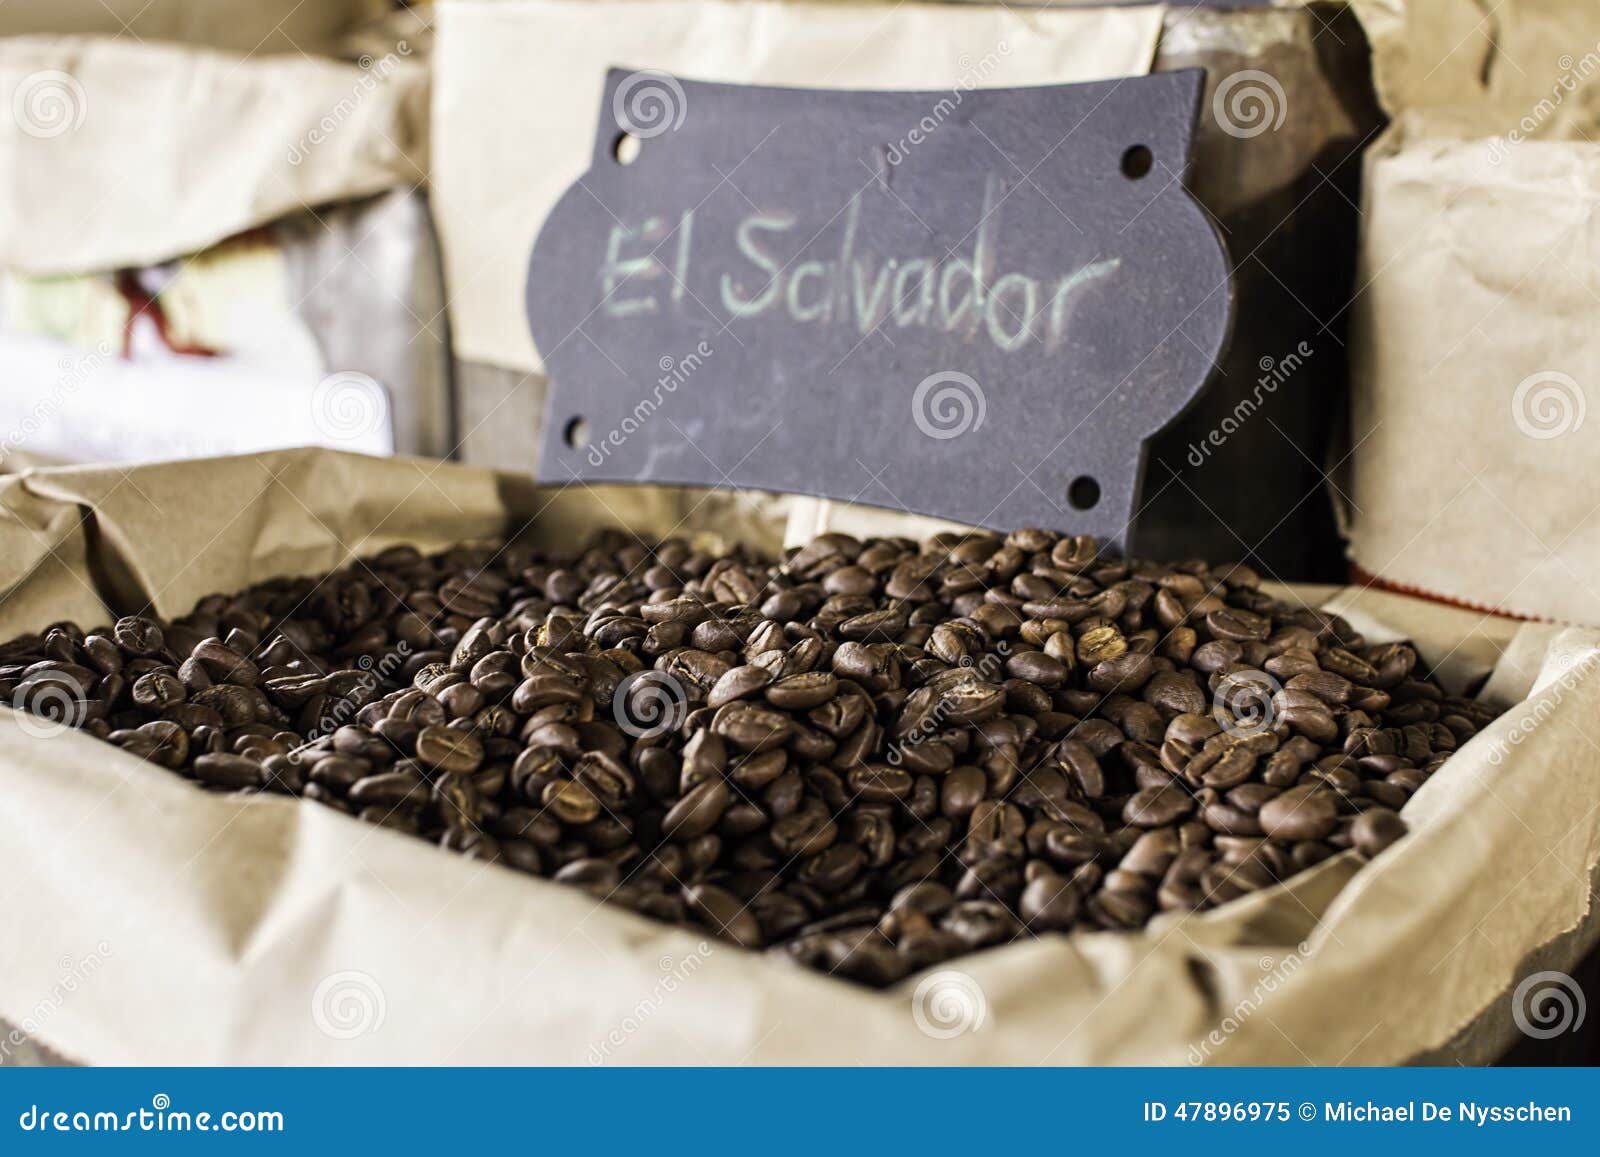 coffee beans el salvador origin